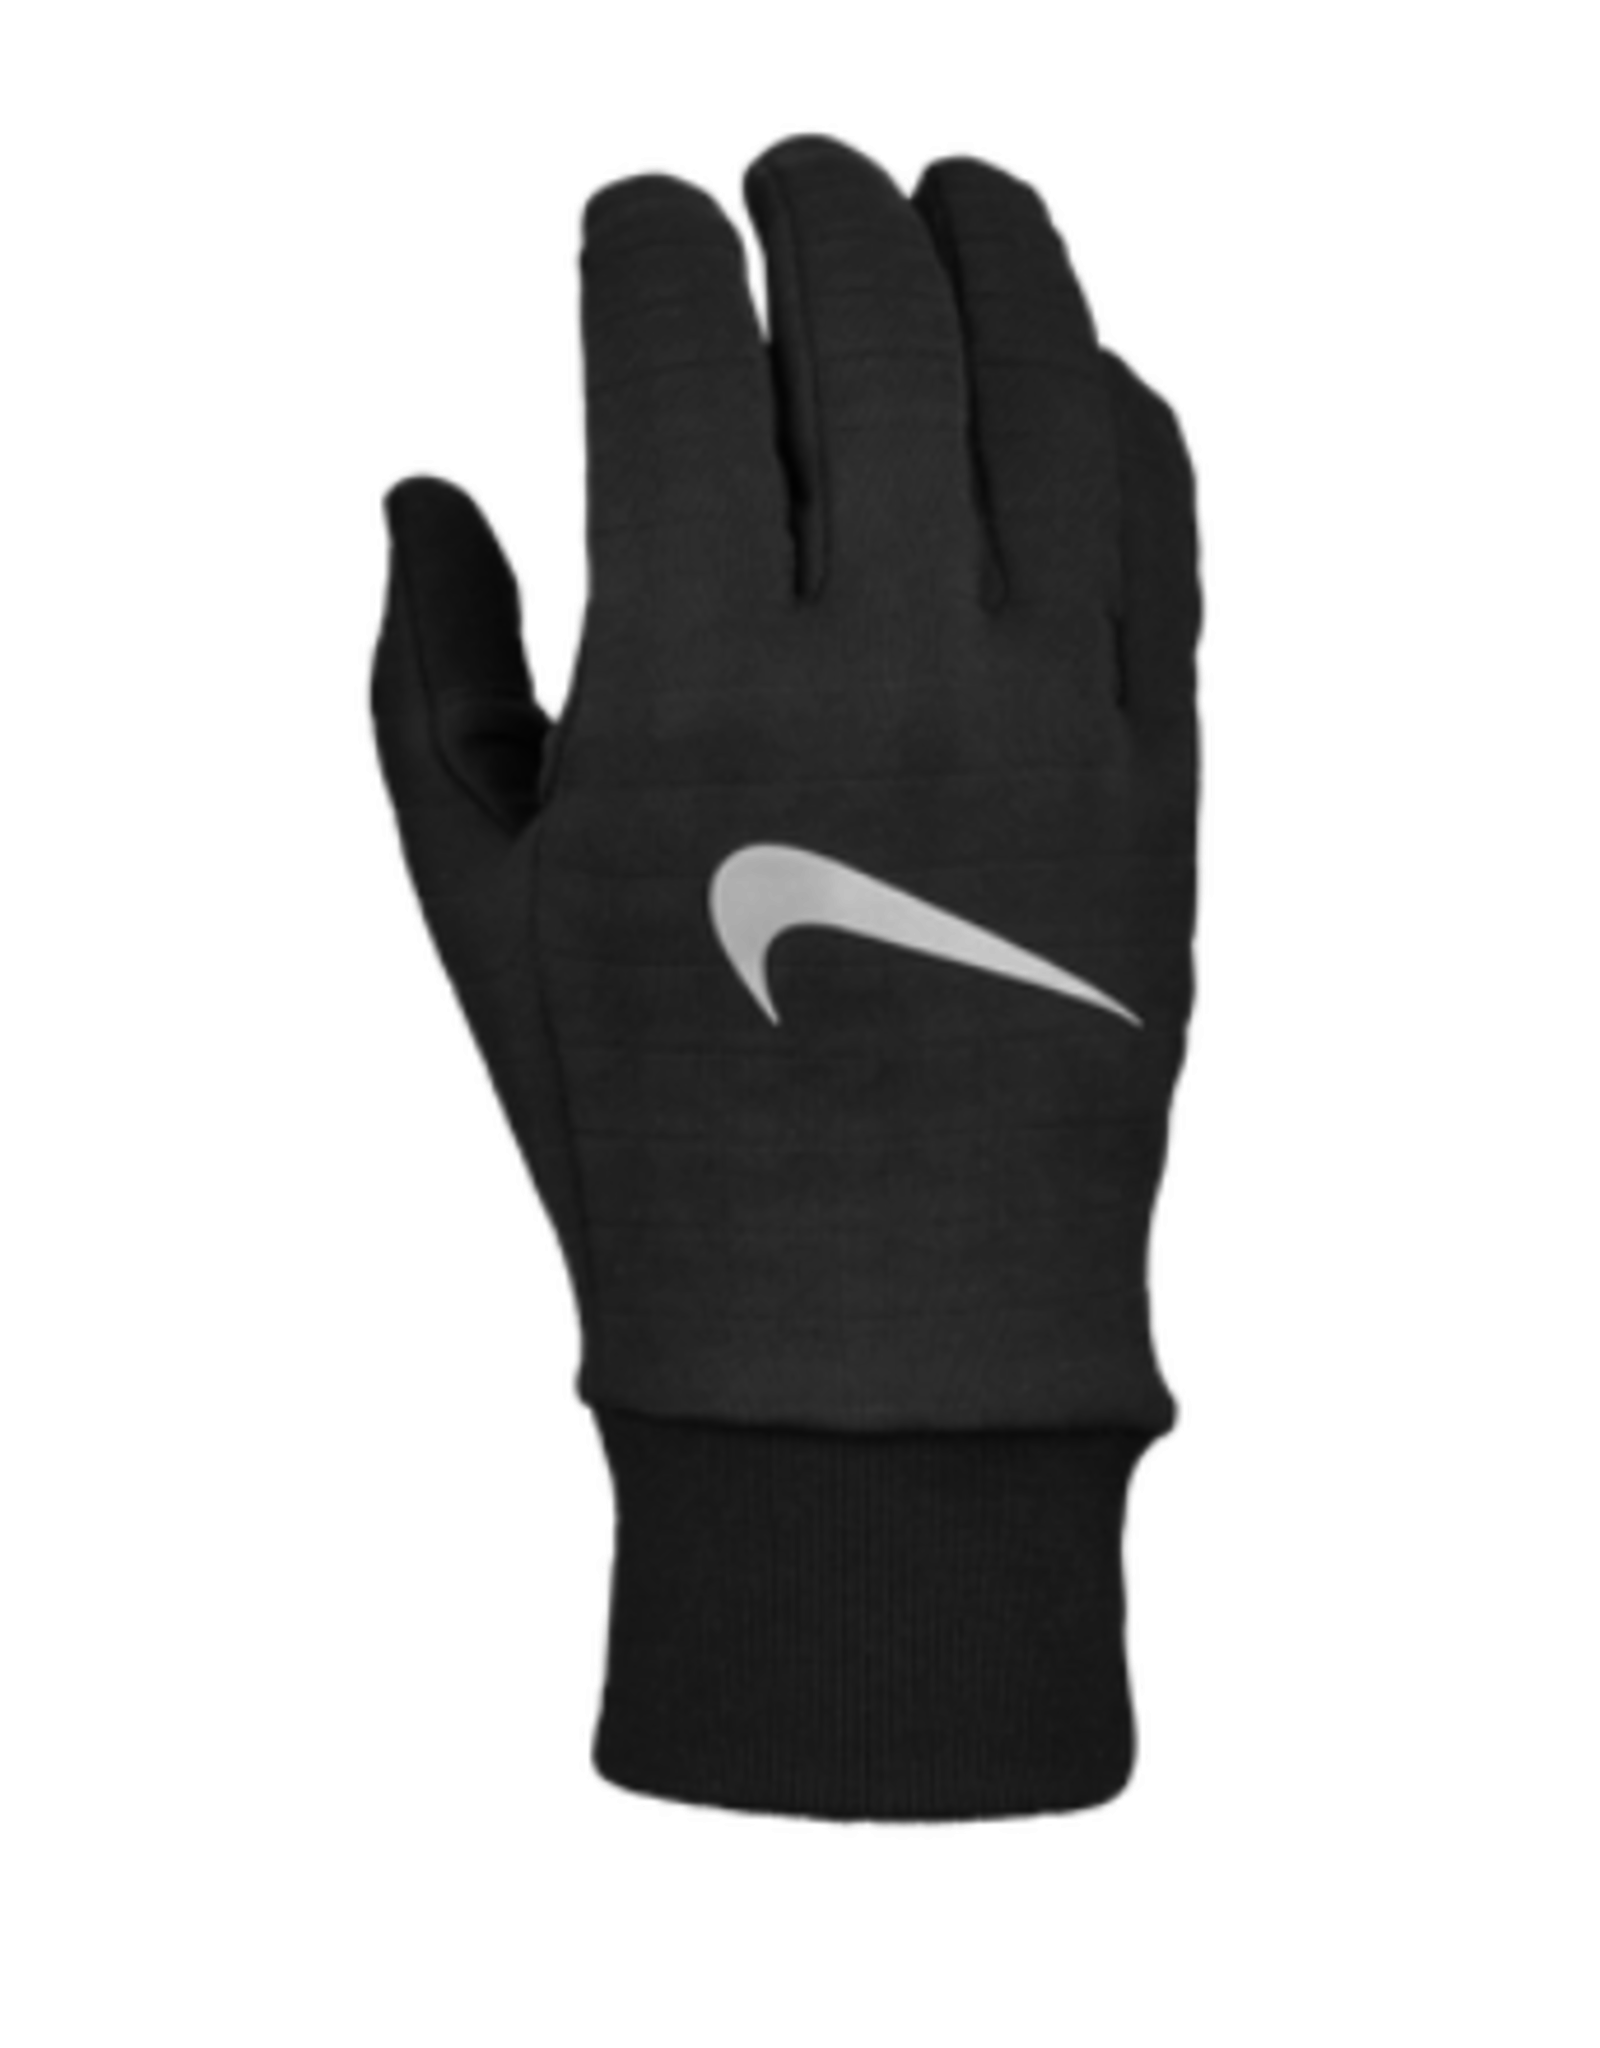 NON-UNIFORM Nike Sphere Running Gloves 3.0 - Men's